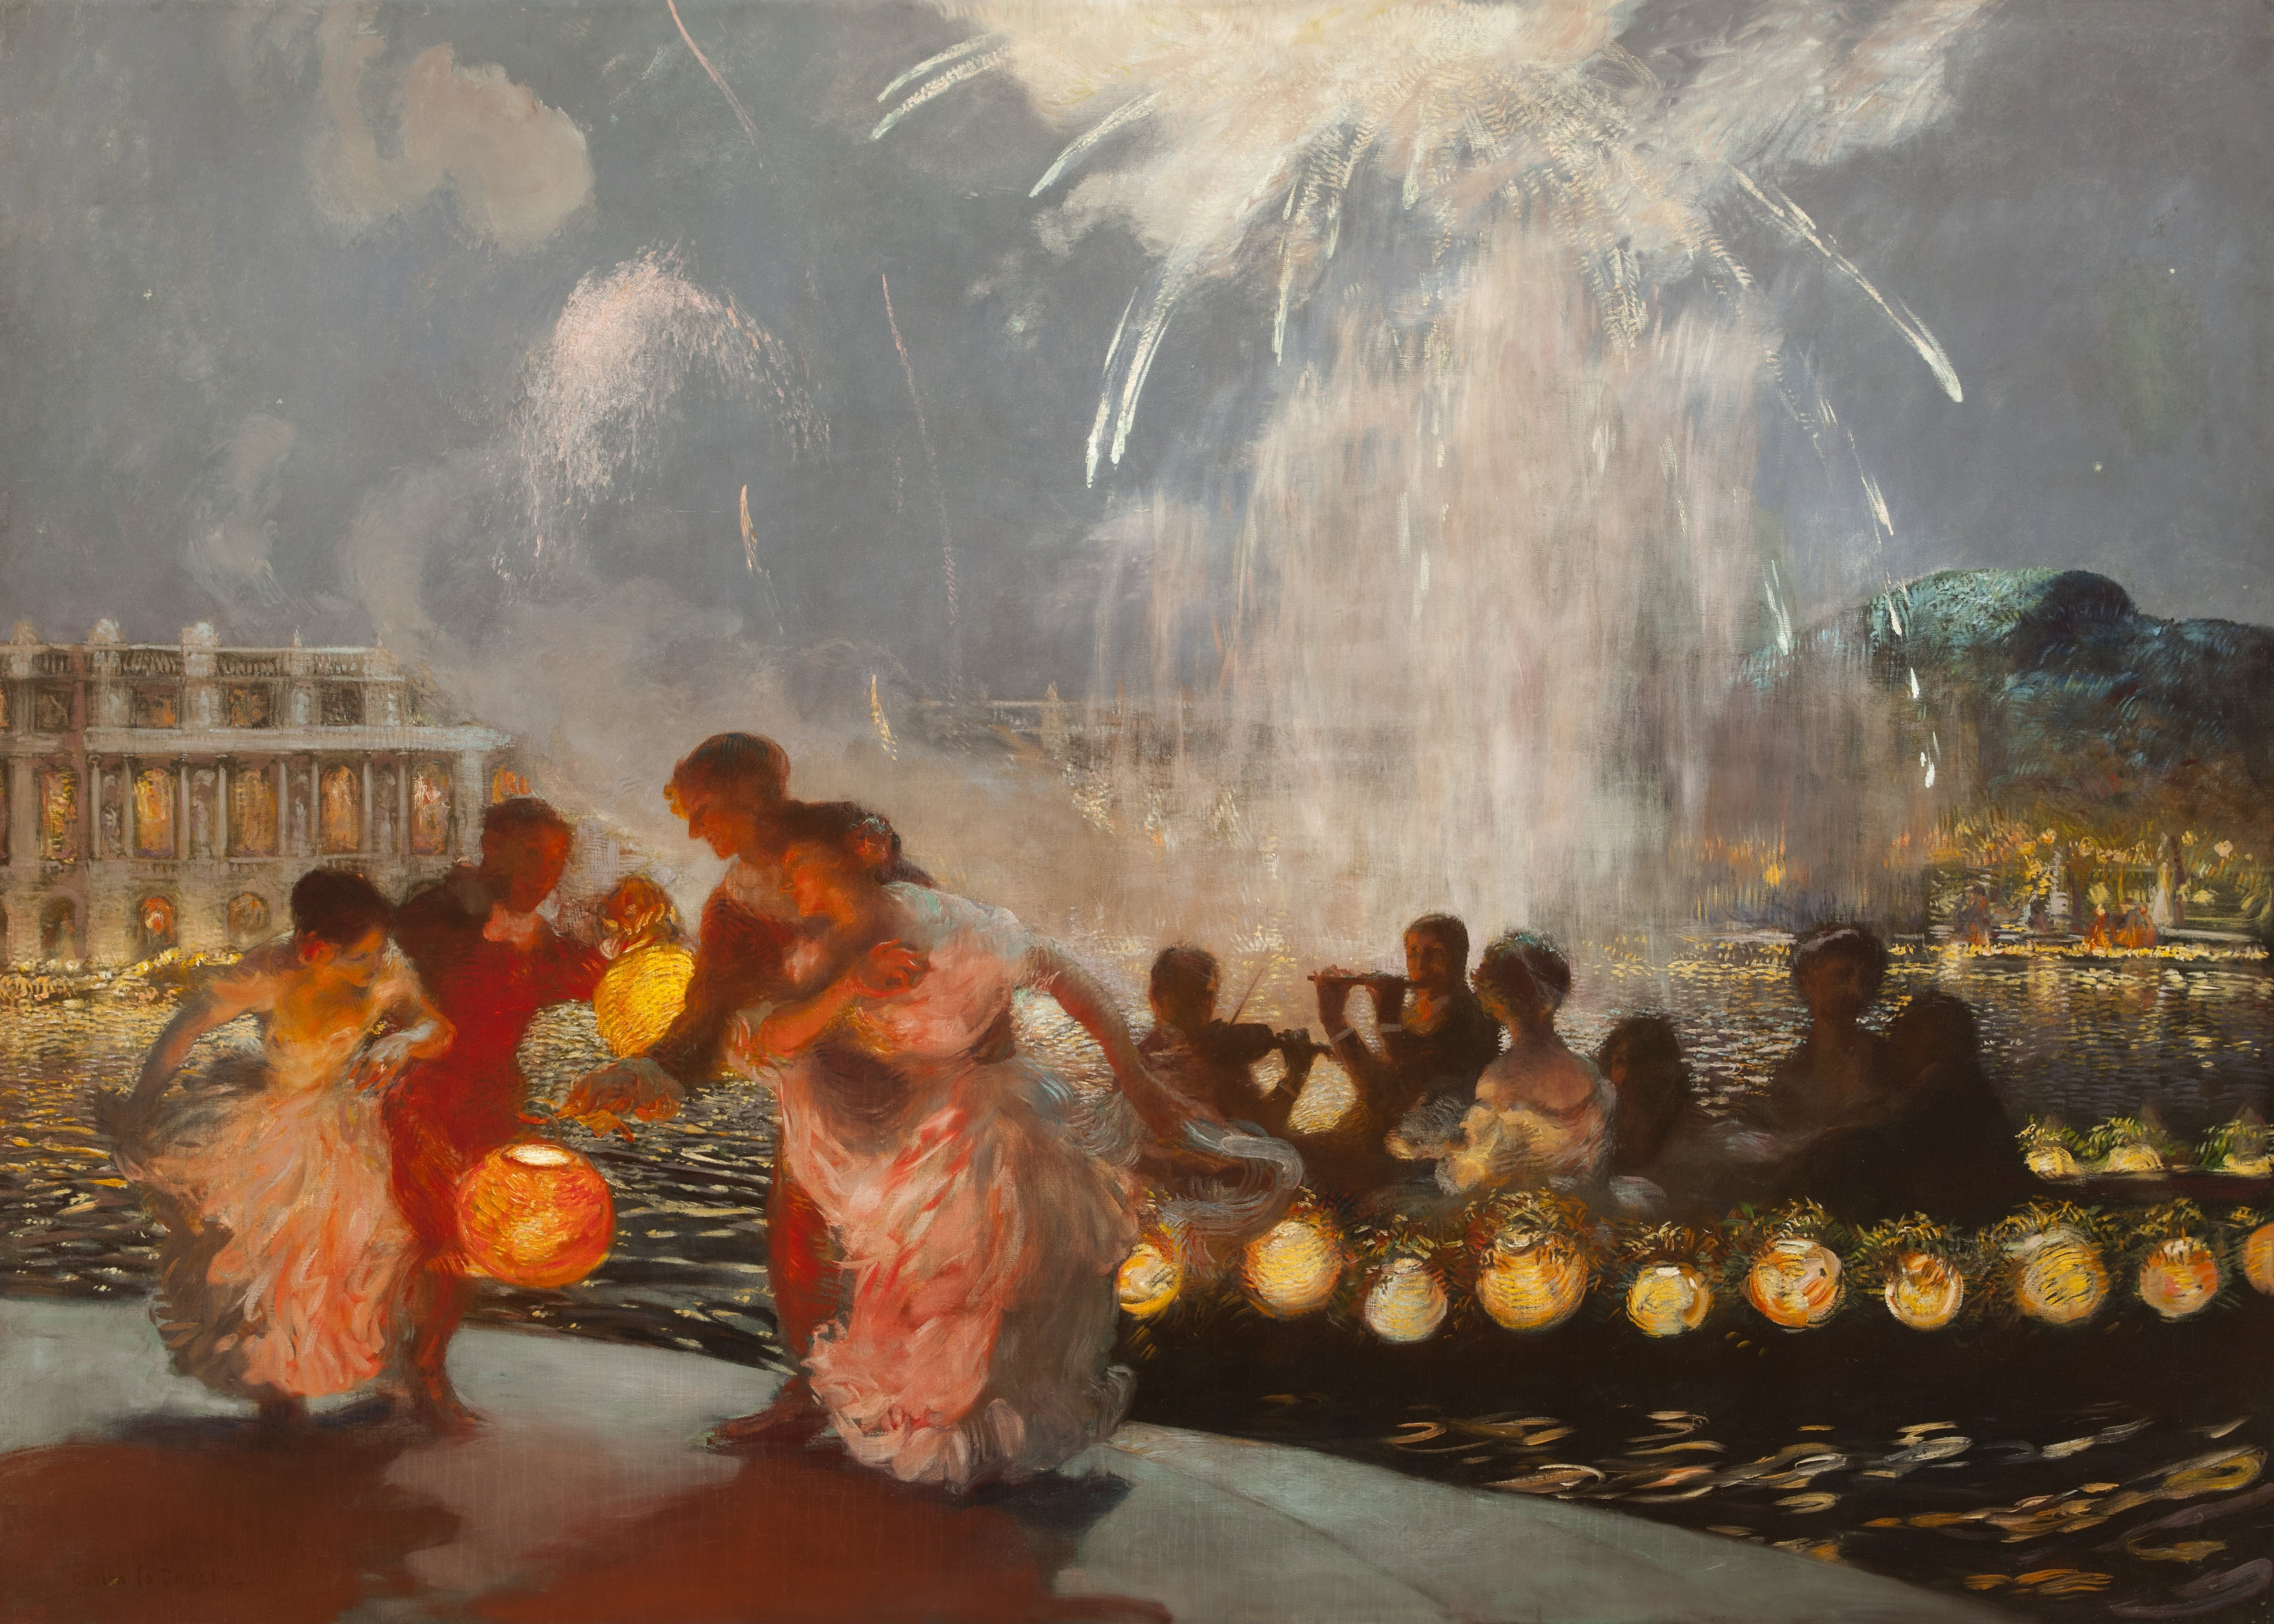 La Festa Gioiosa by Gaston La Touche - ca. 1906 - 210 x 288 cm 